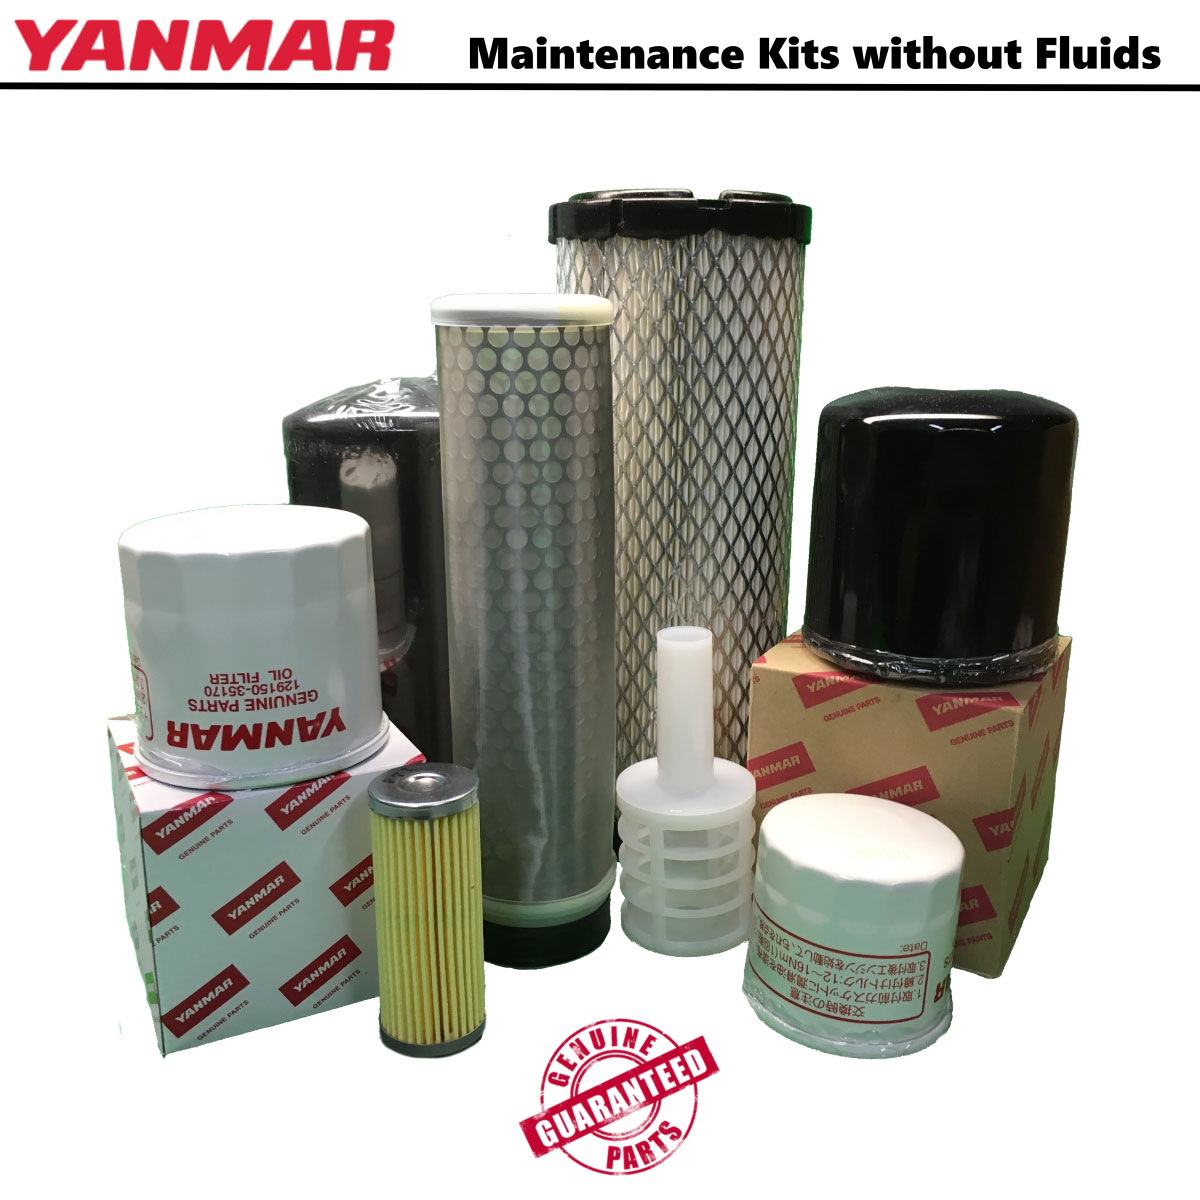 YANMAR CBL 40 Filter Service Kit w/Yanmar Eng.